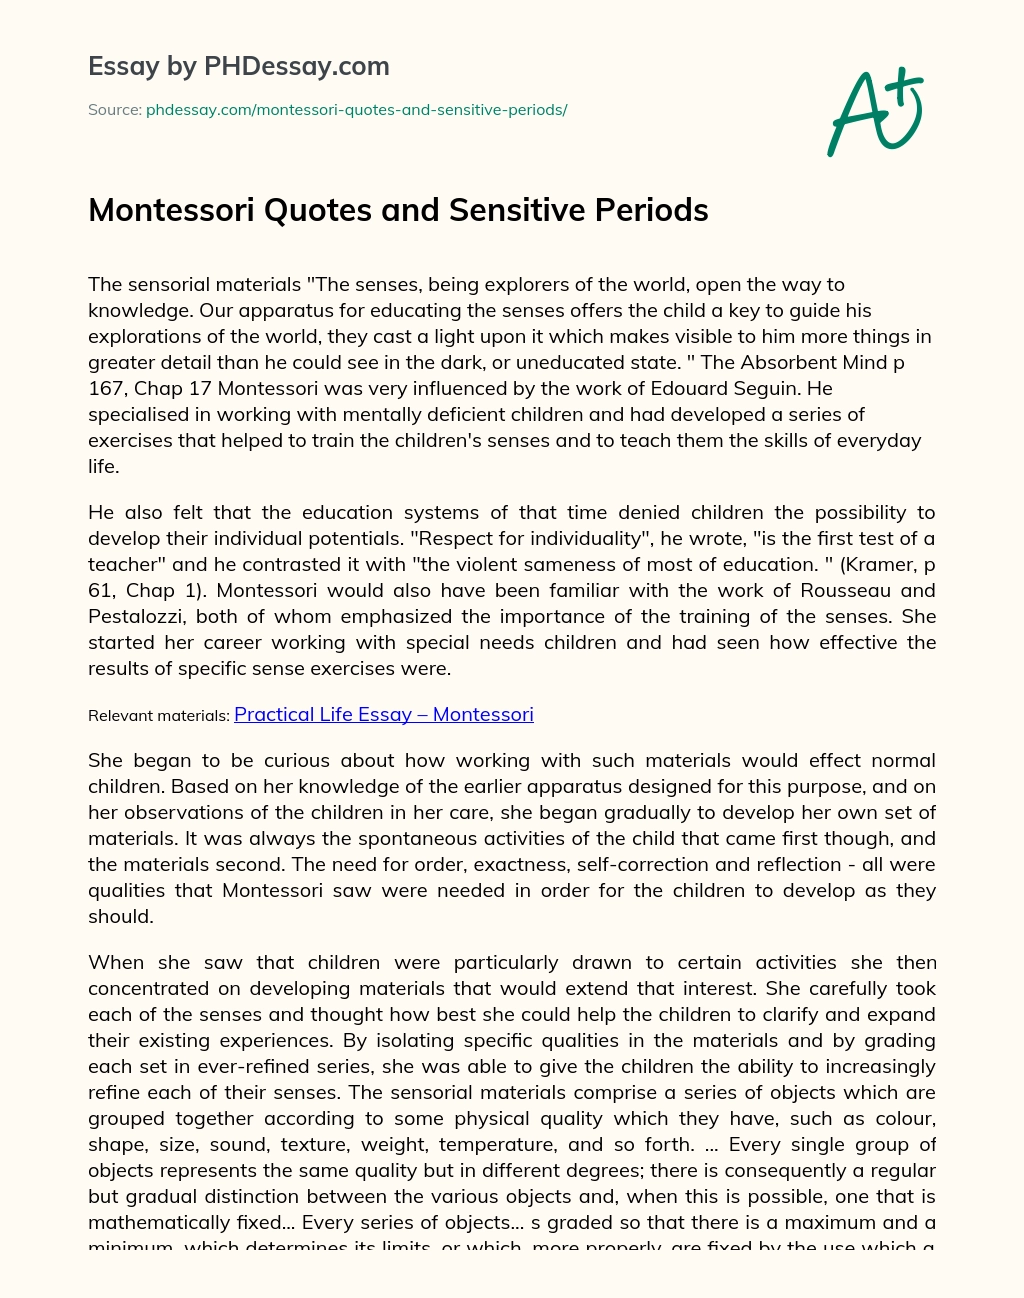 Montessori Quotes and Sensitive Periods essay